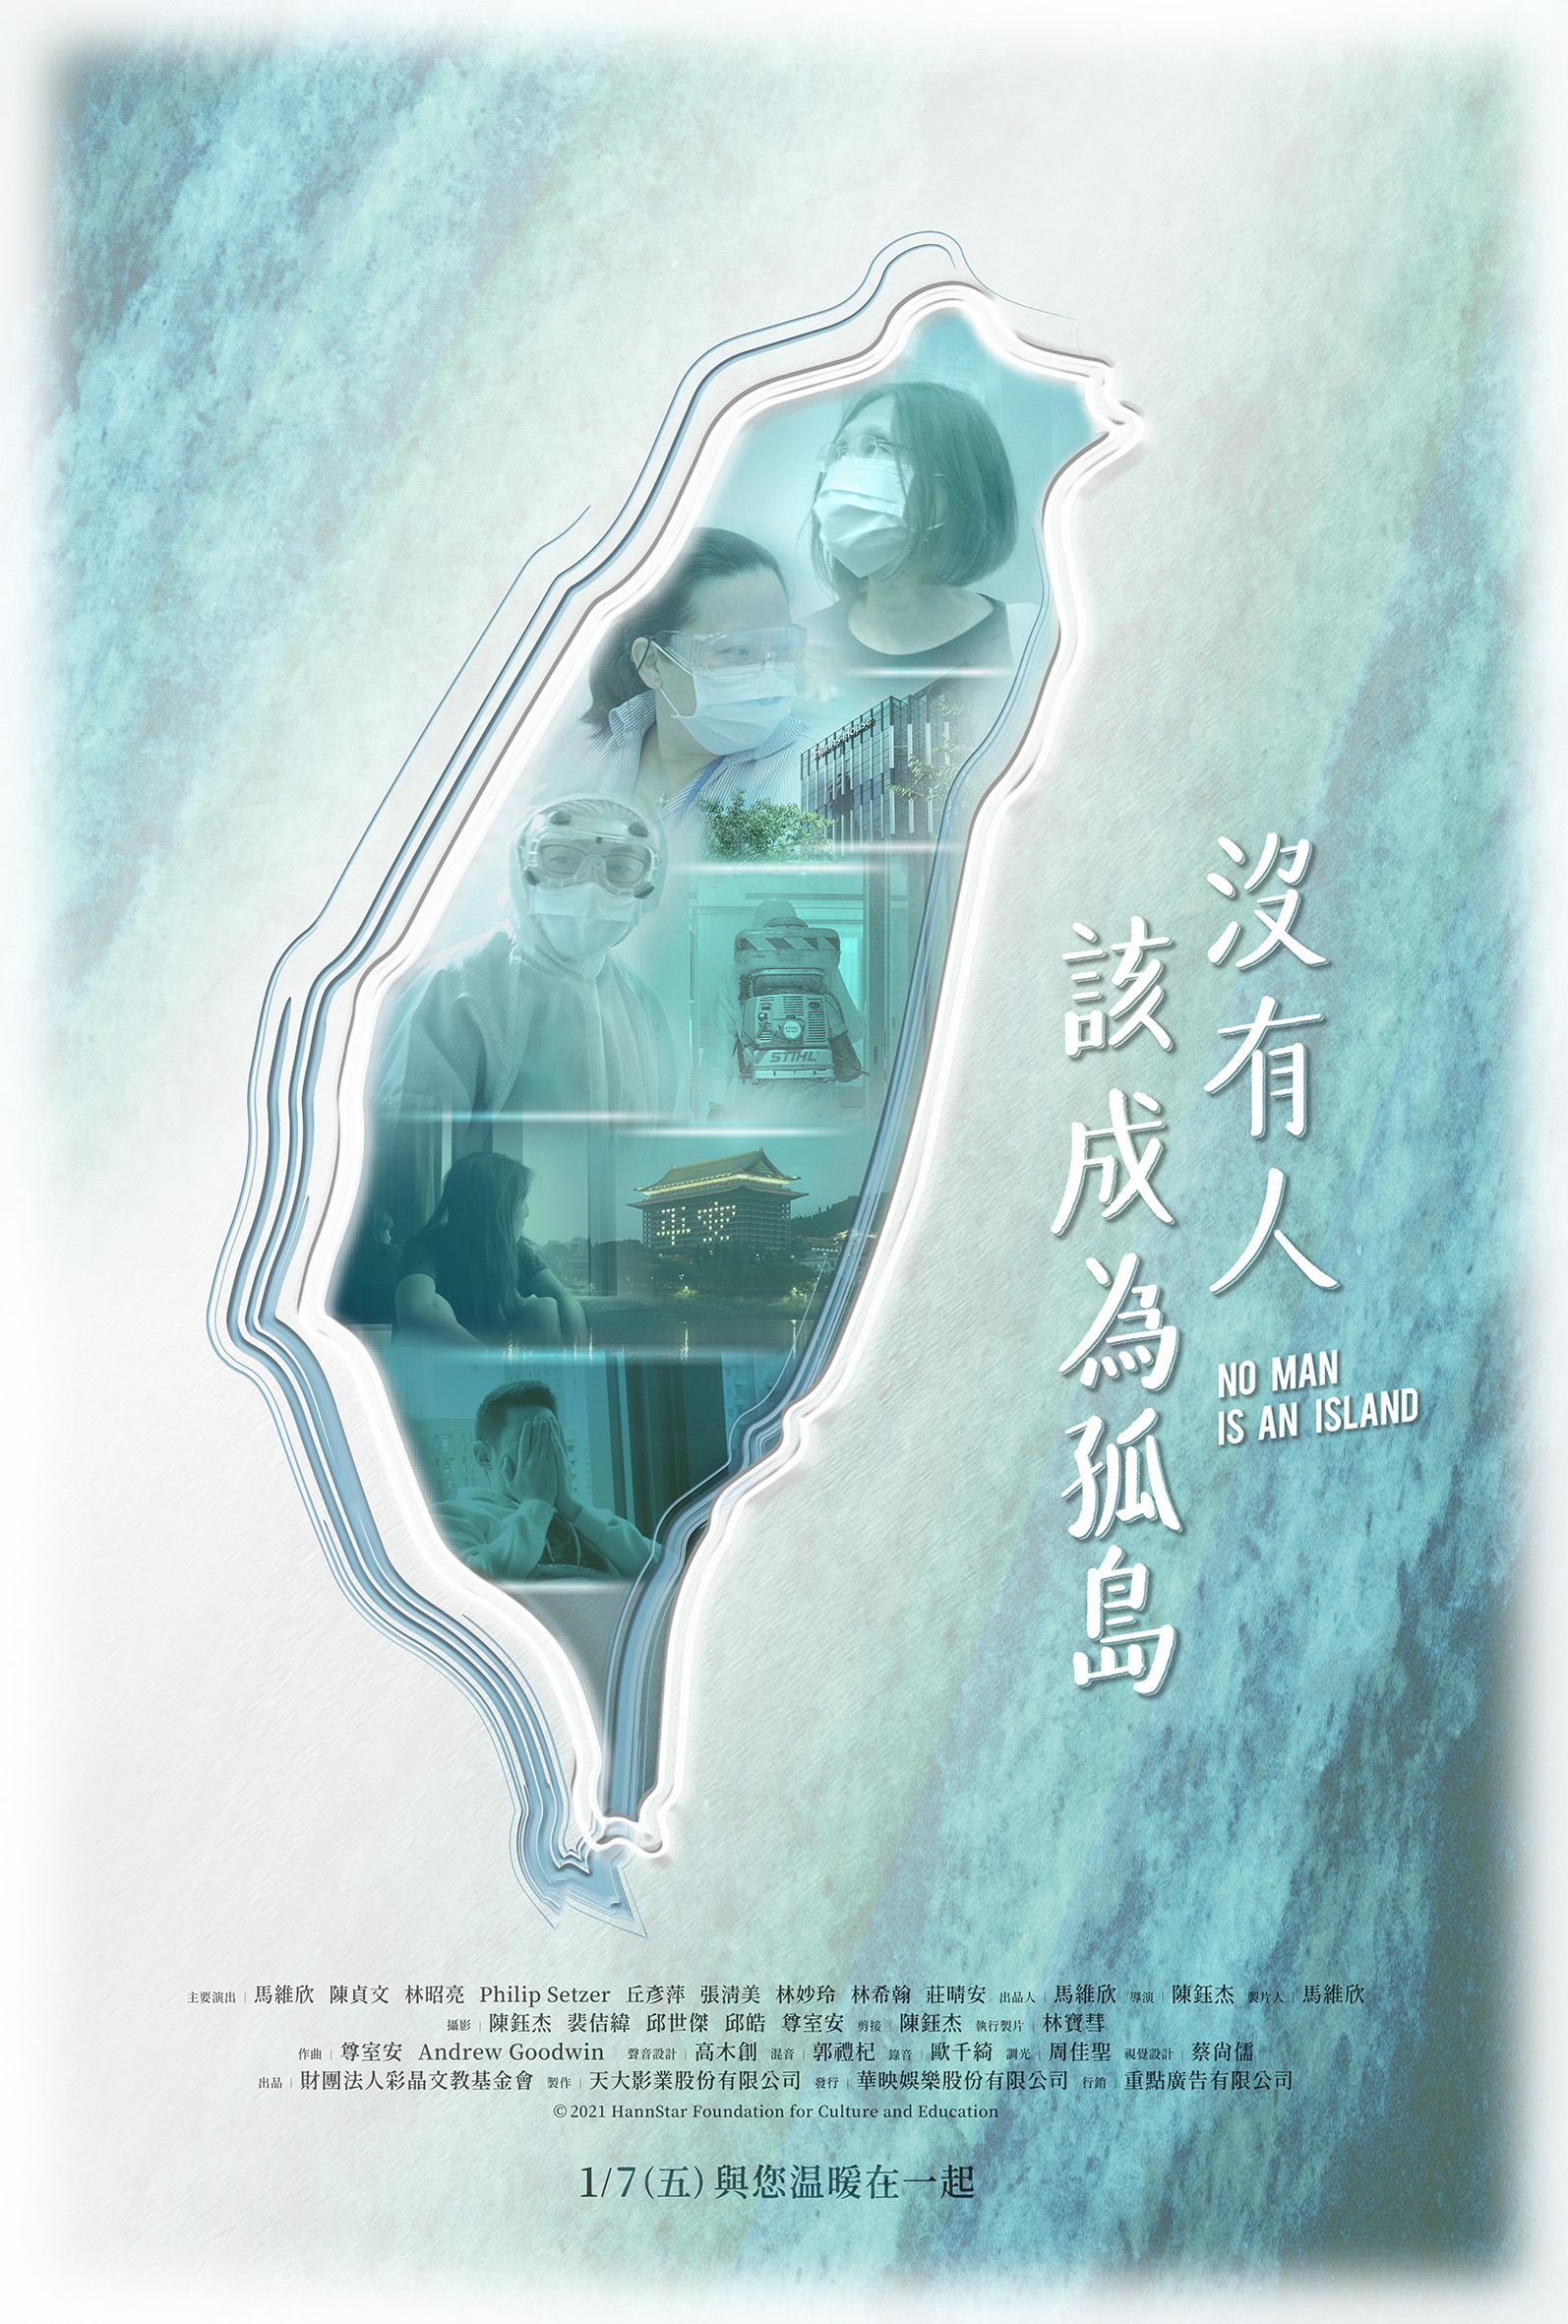 台灣成為新冠肺炎防疫優等生，紀錄片《沒有人該成為孤島》見證他/她們的隔離人生！